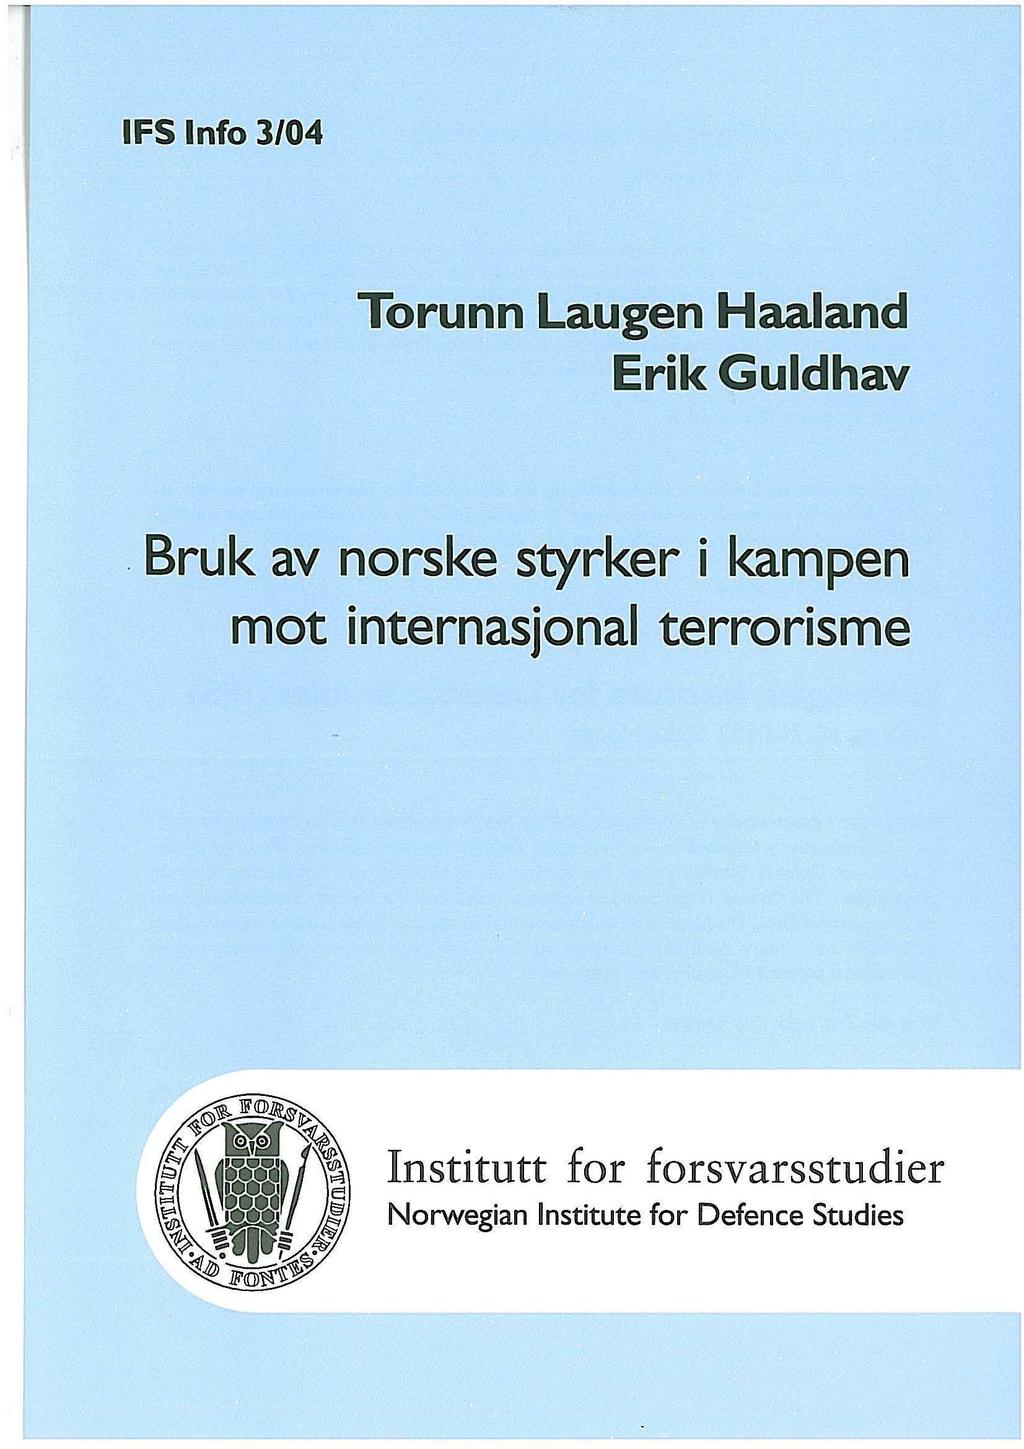 IFS Info 3104 Torunn Laugen Haaland Erik Gulelhav.